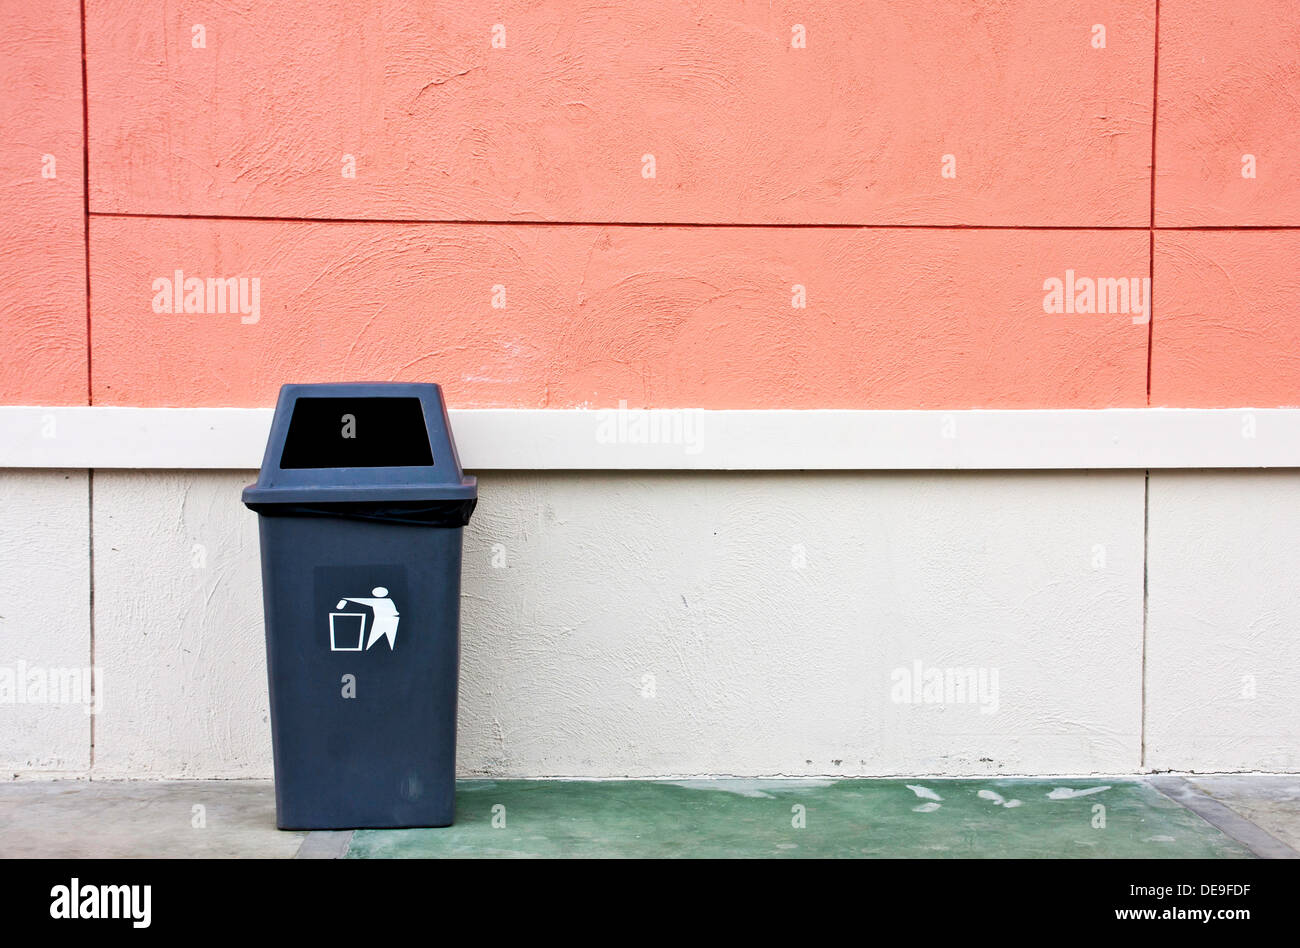 Architekturgebäude bin blaue Flasche Box kann Stadt cleanes Design schmutzig Entsorgung Tür Dump Mülleimer Umwelt Papierkorb Wand Müll Stockfoto